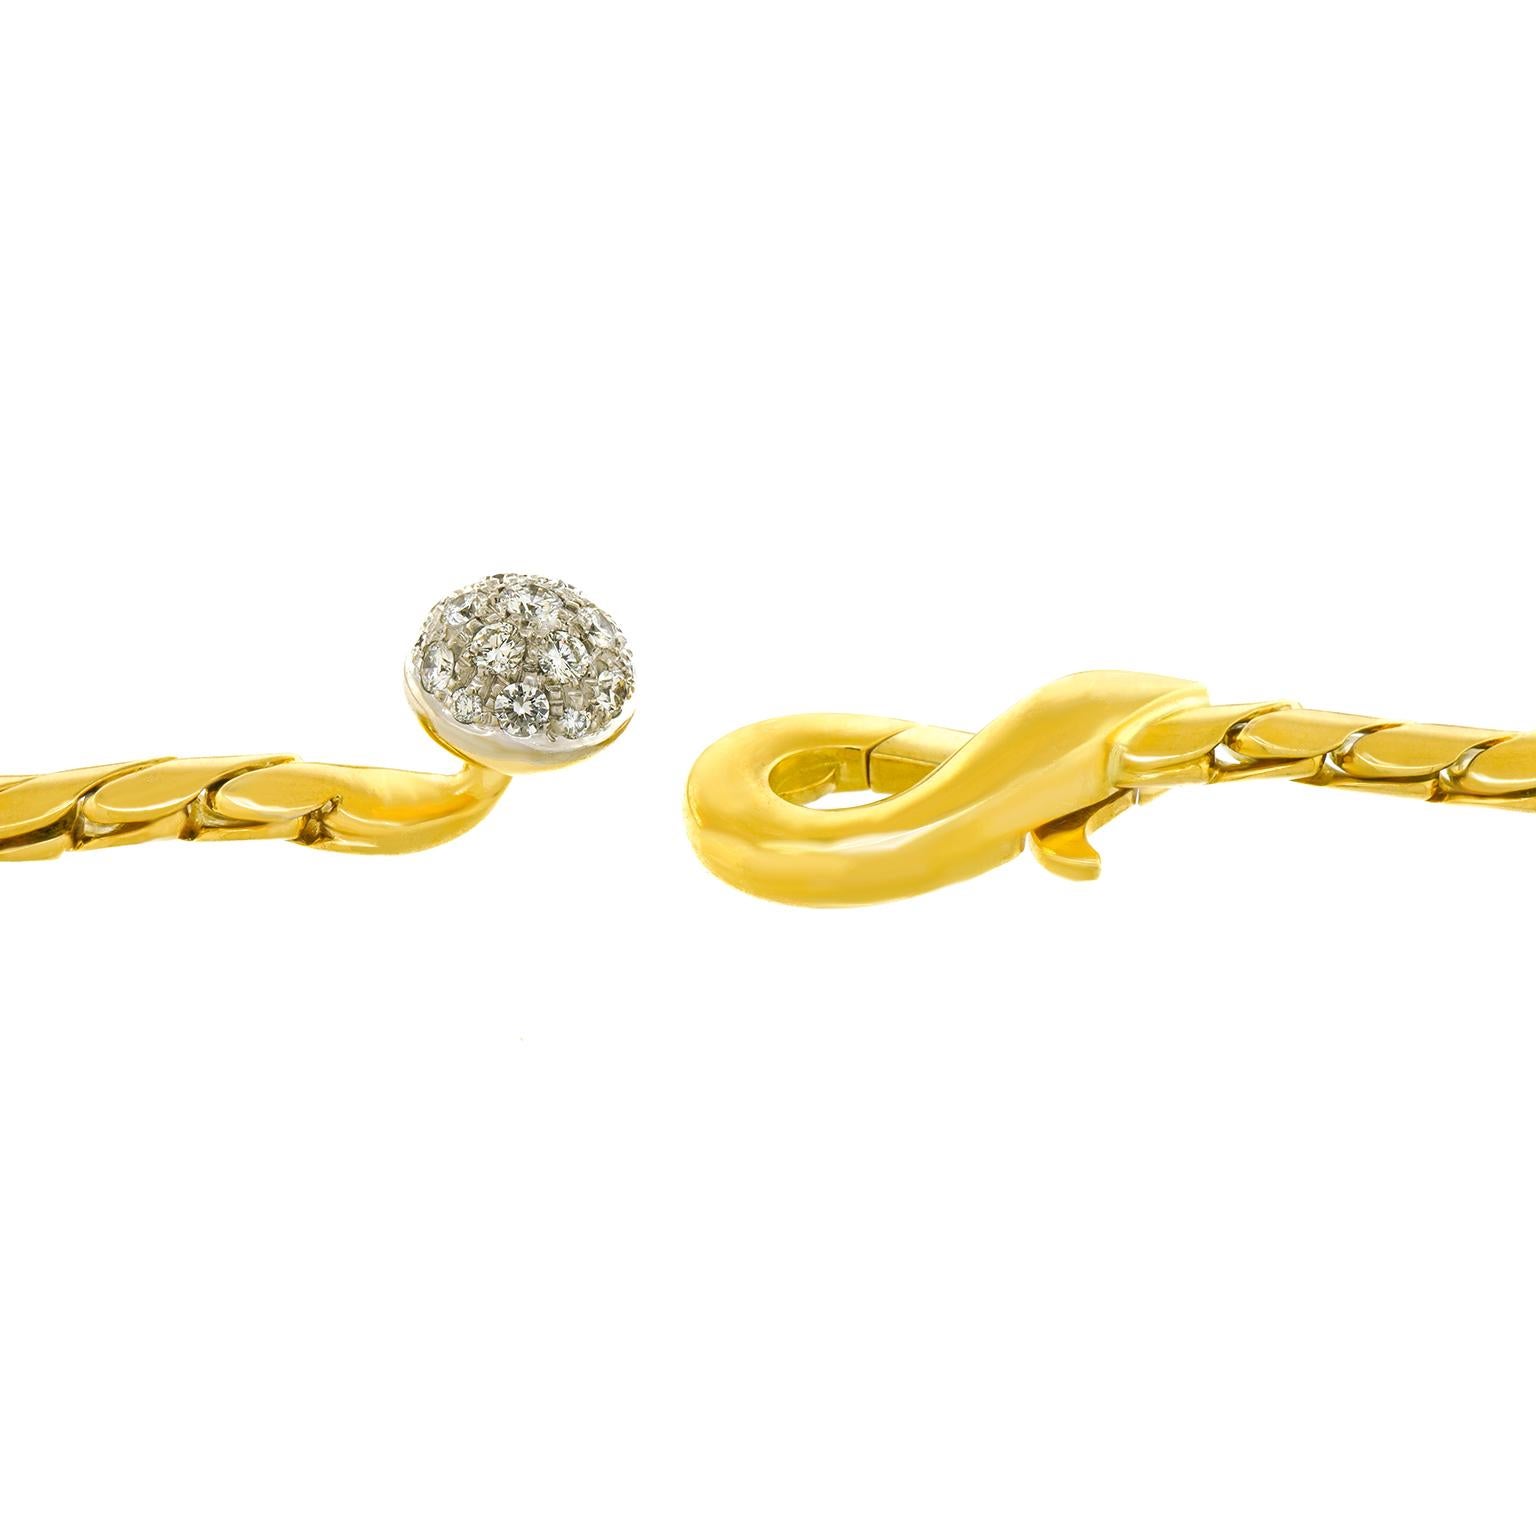 Brilliant Cut Pomellato Gold Necklace with Decorative Diamond Catch For Sale